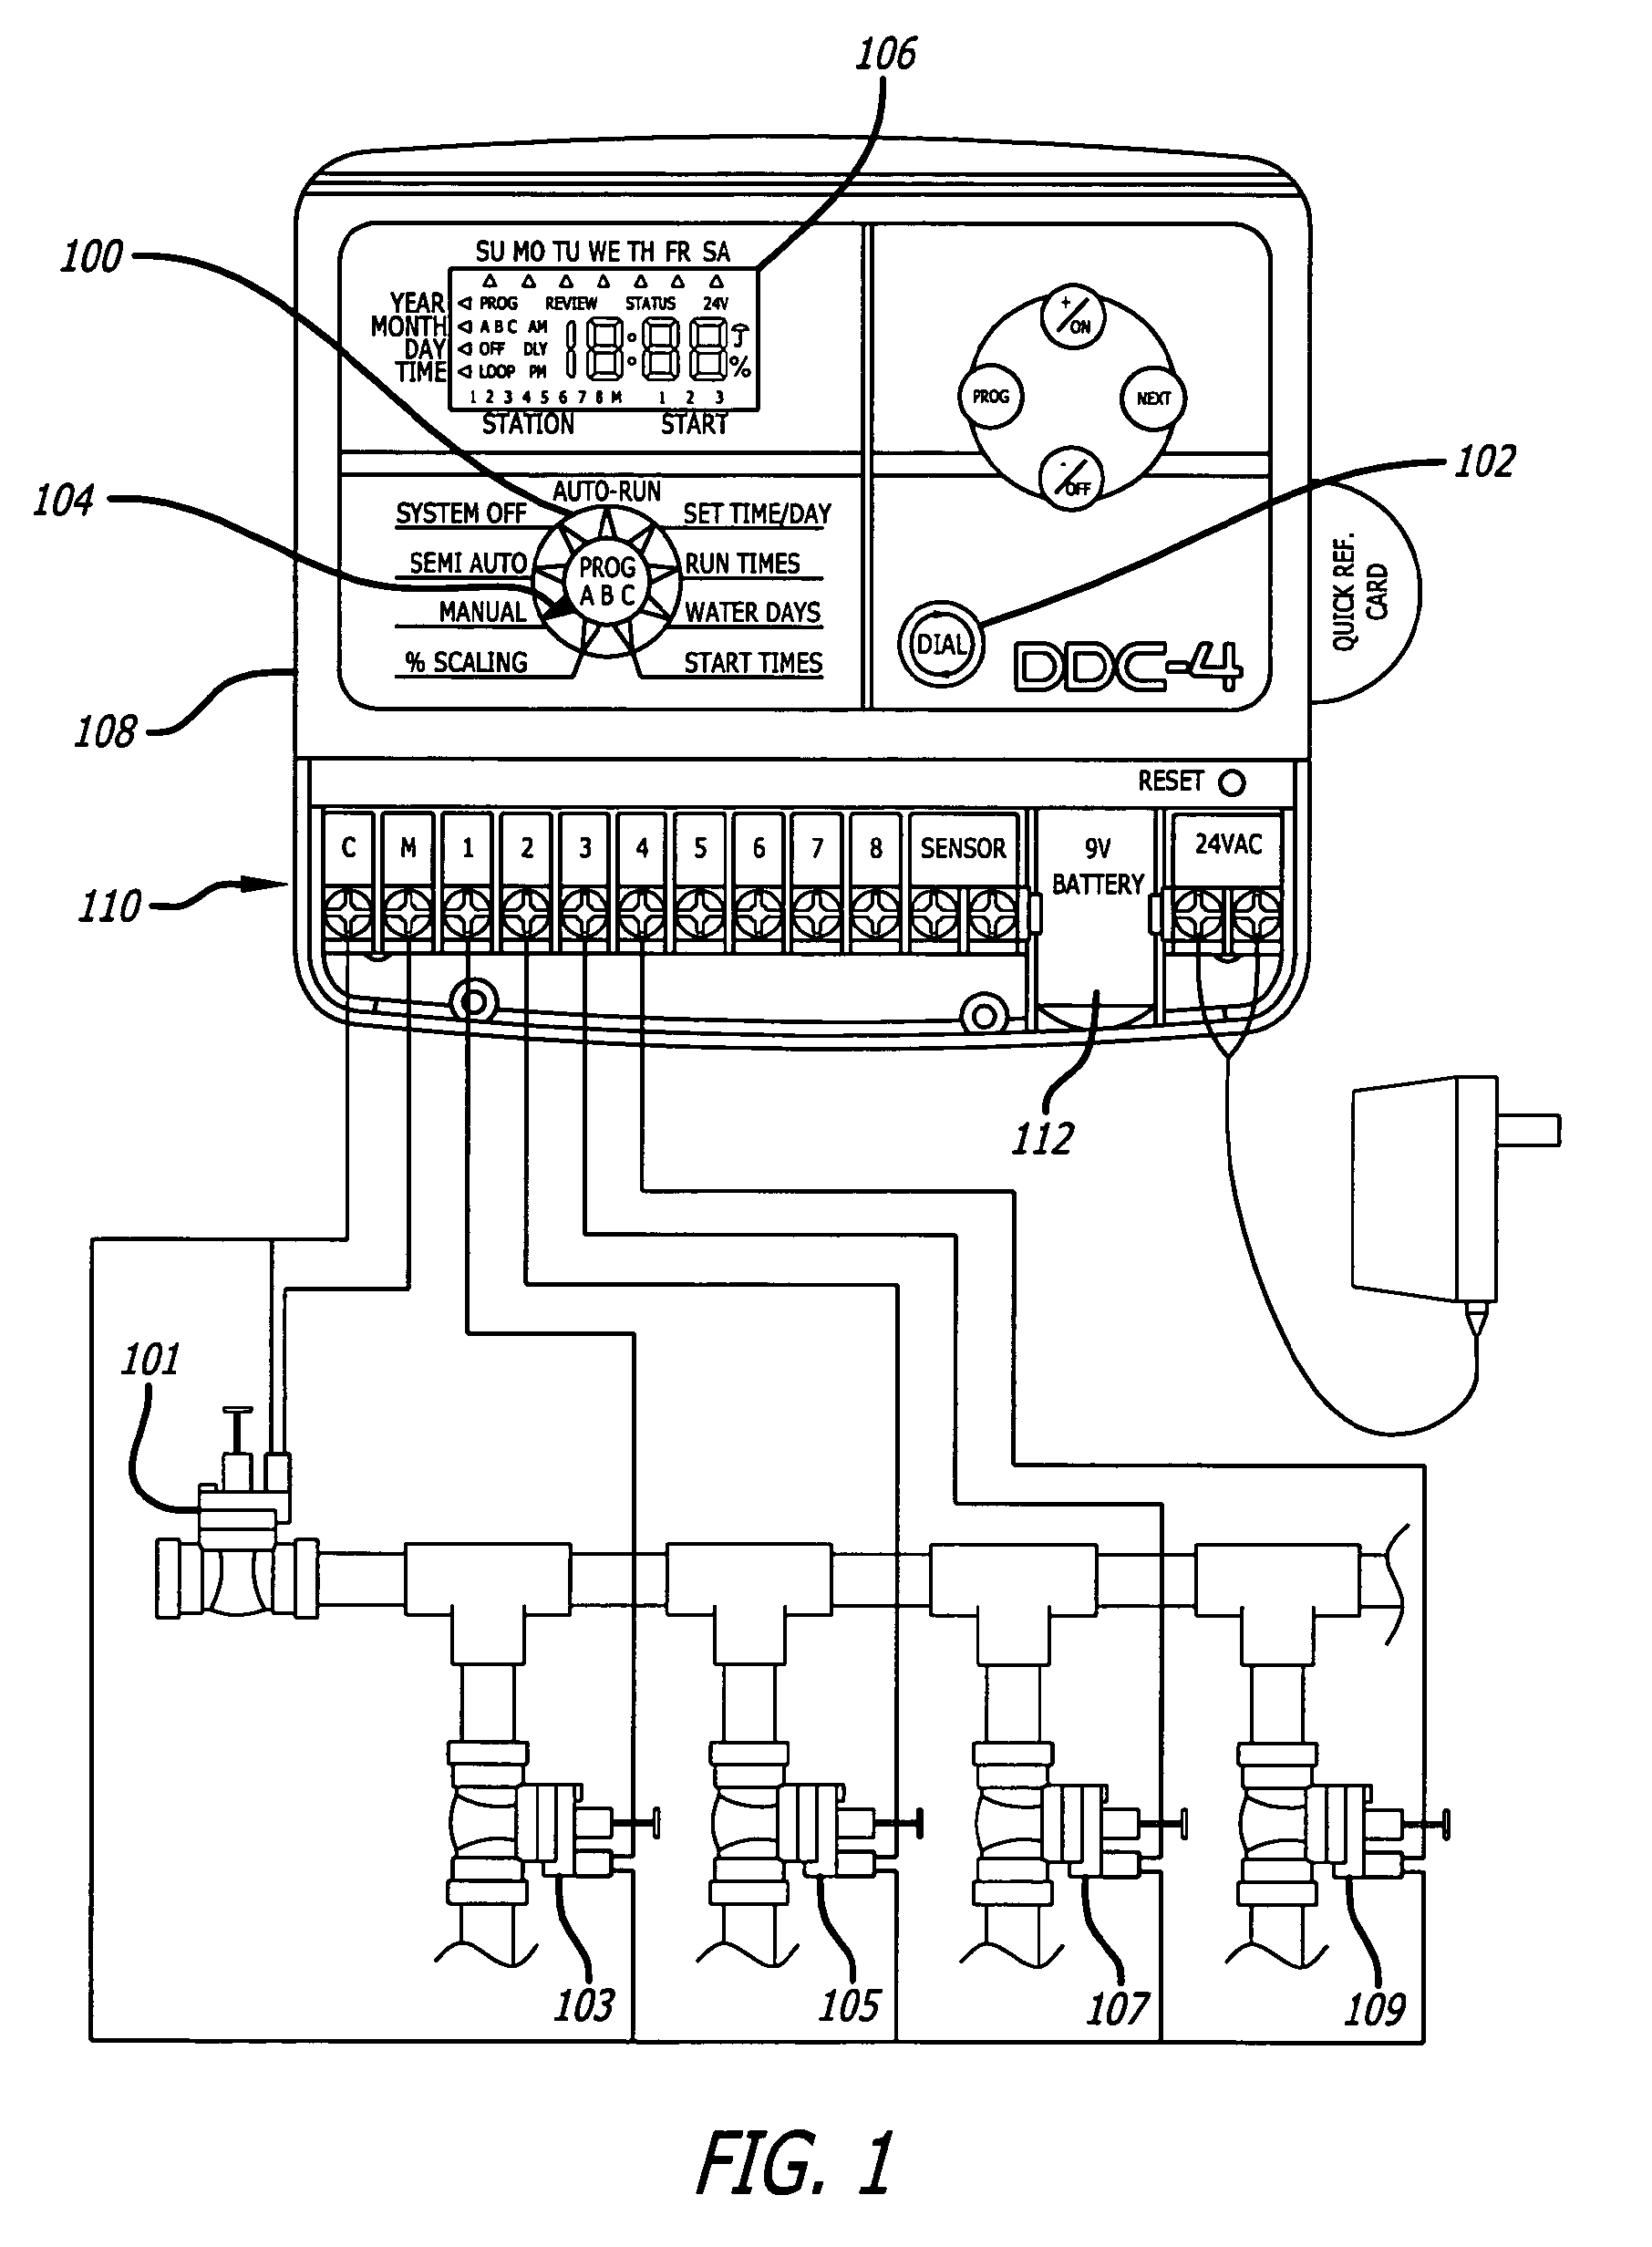 dualtron controller wiring diagram